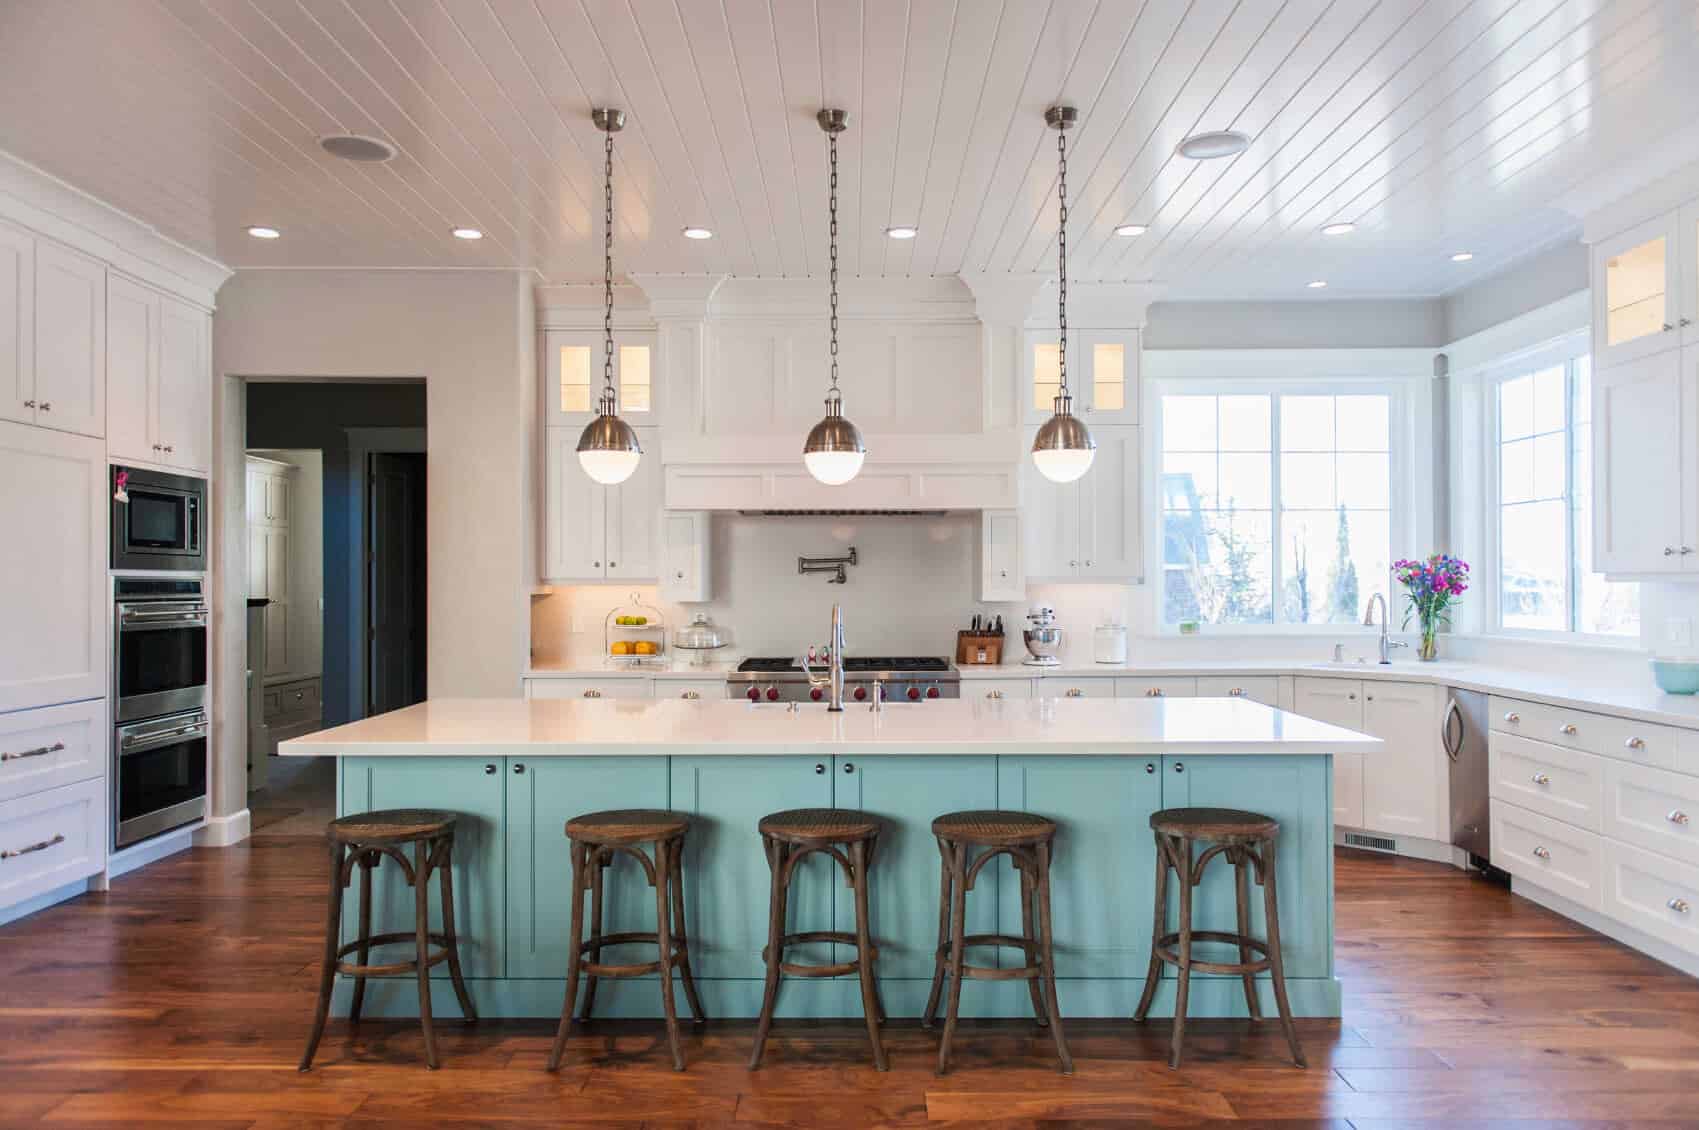 这个白色的厨房背靠蓝色的中央岛式橱柜和硬木地板，一定会吸引游客的目光。光滑的白色柜台看起来很完美。这种颜色的组合与厨房的风格非常相配。